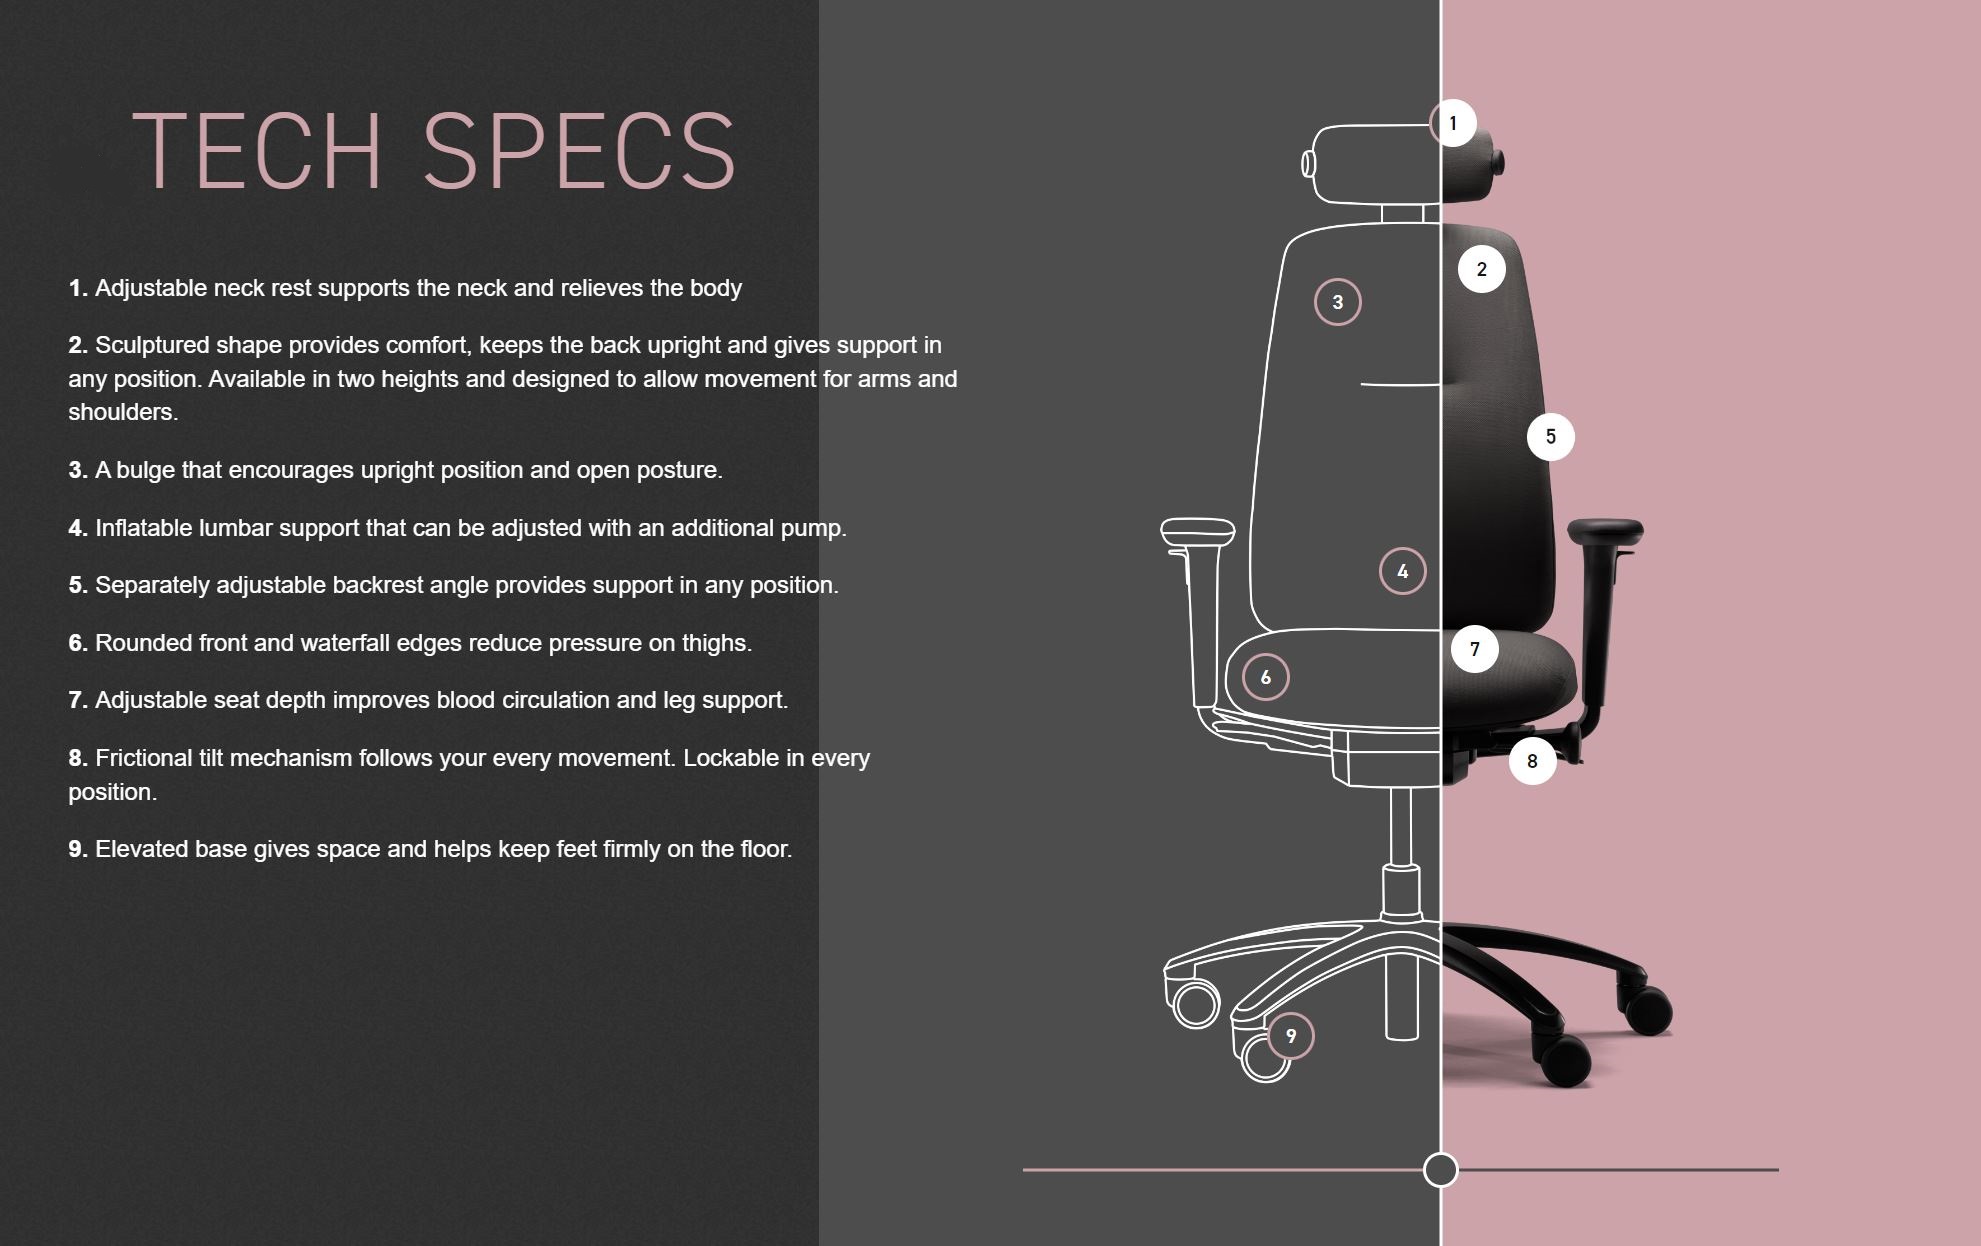 Rhlogic-tech-specs-illustration